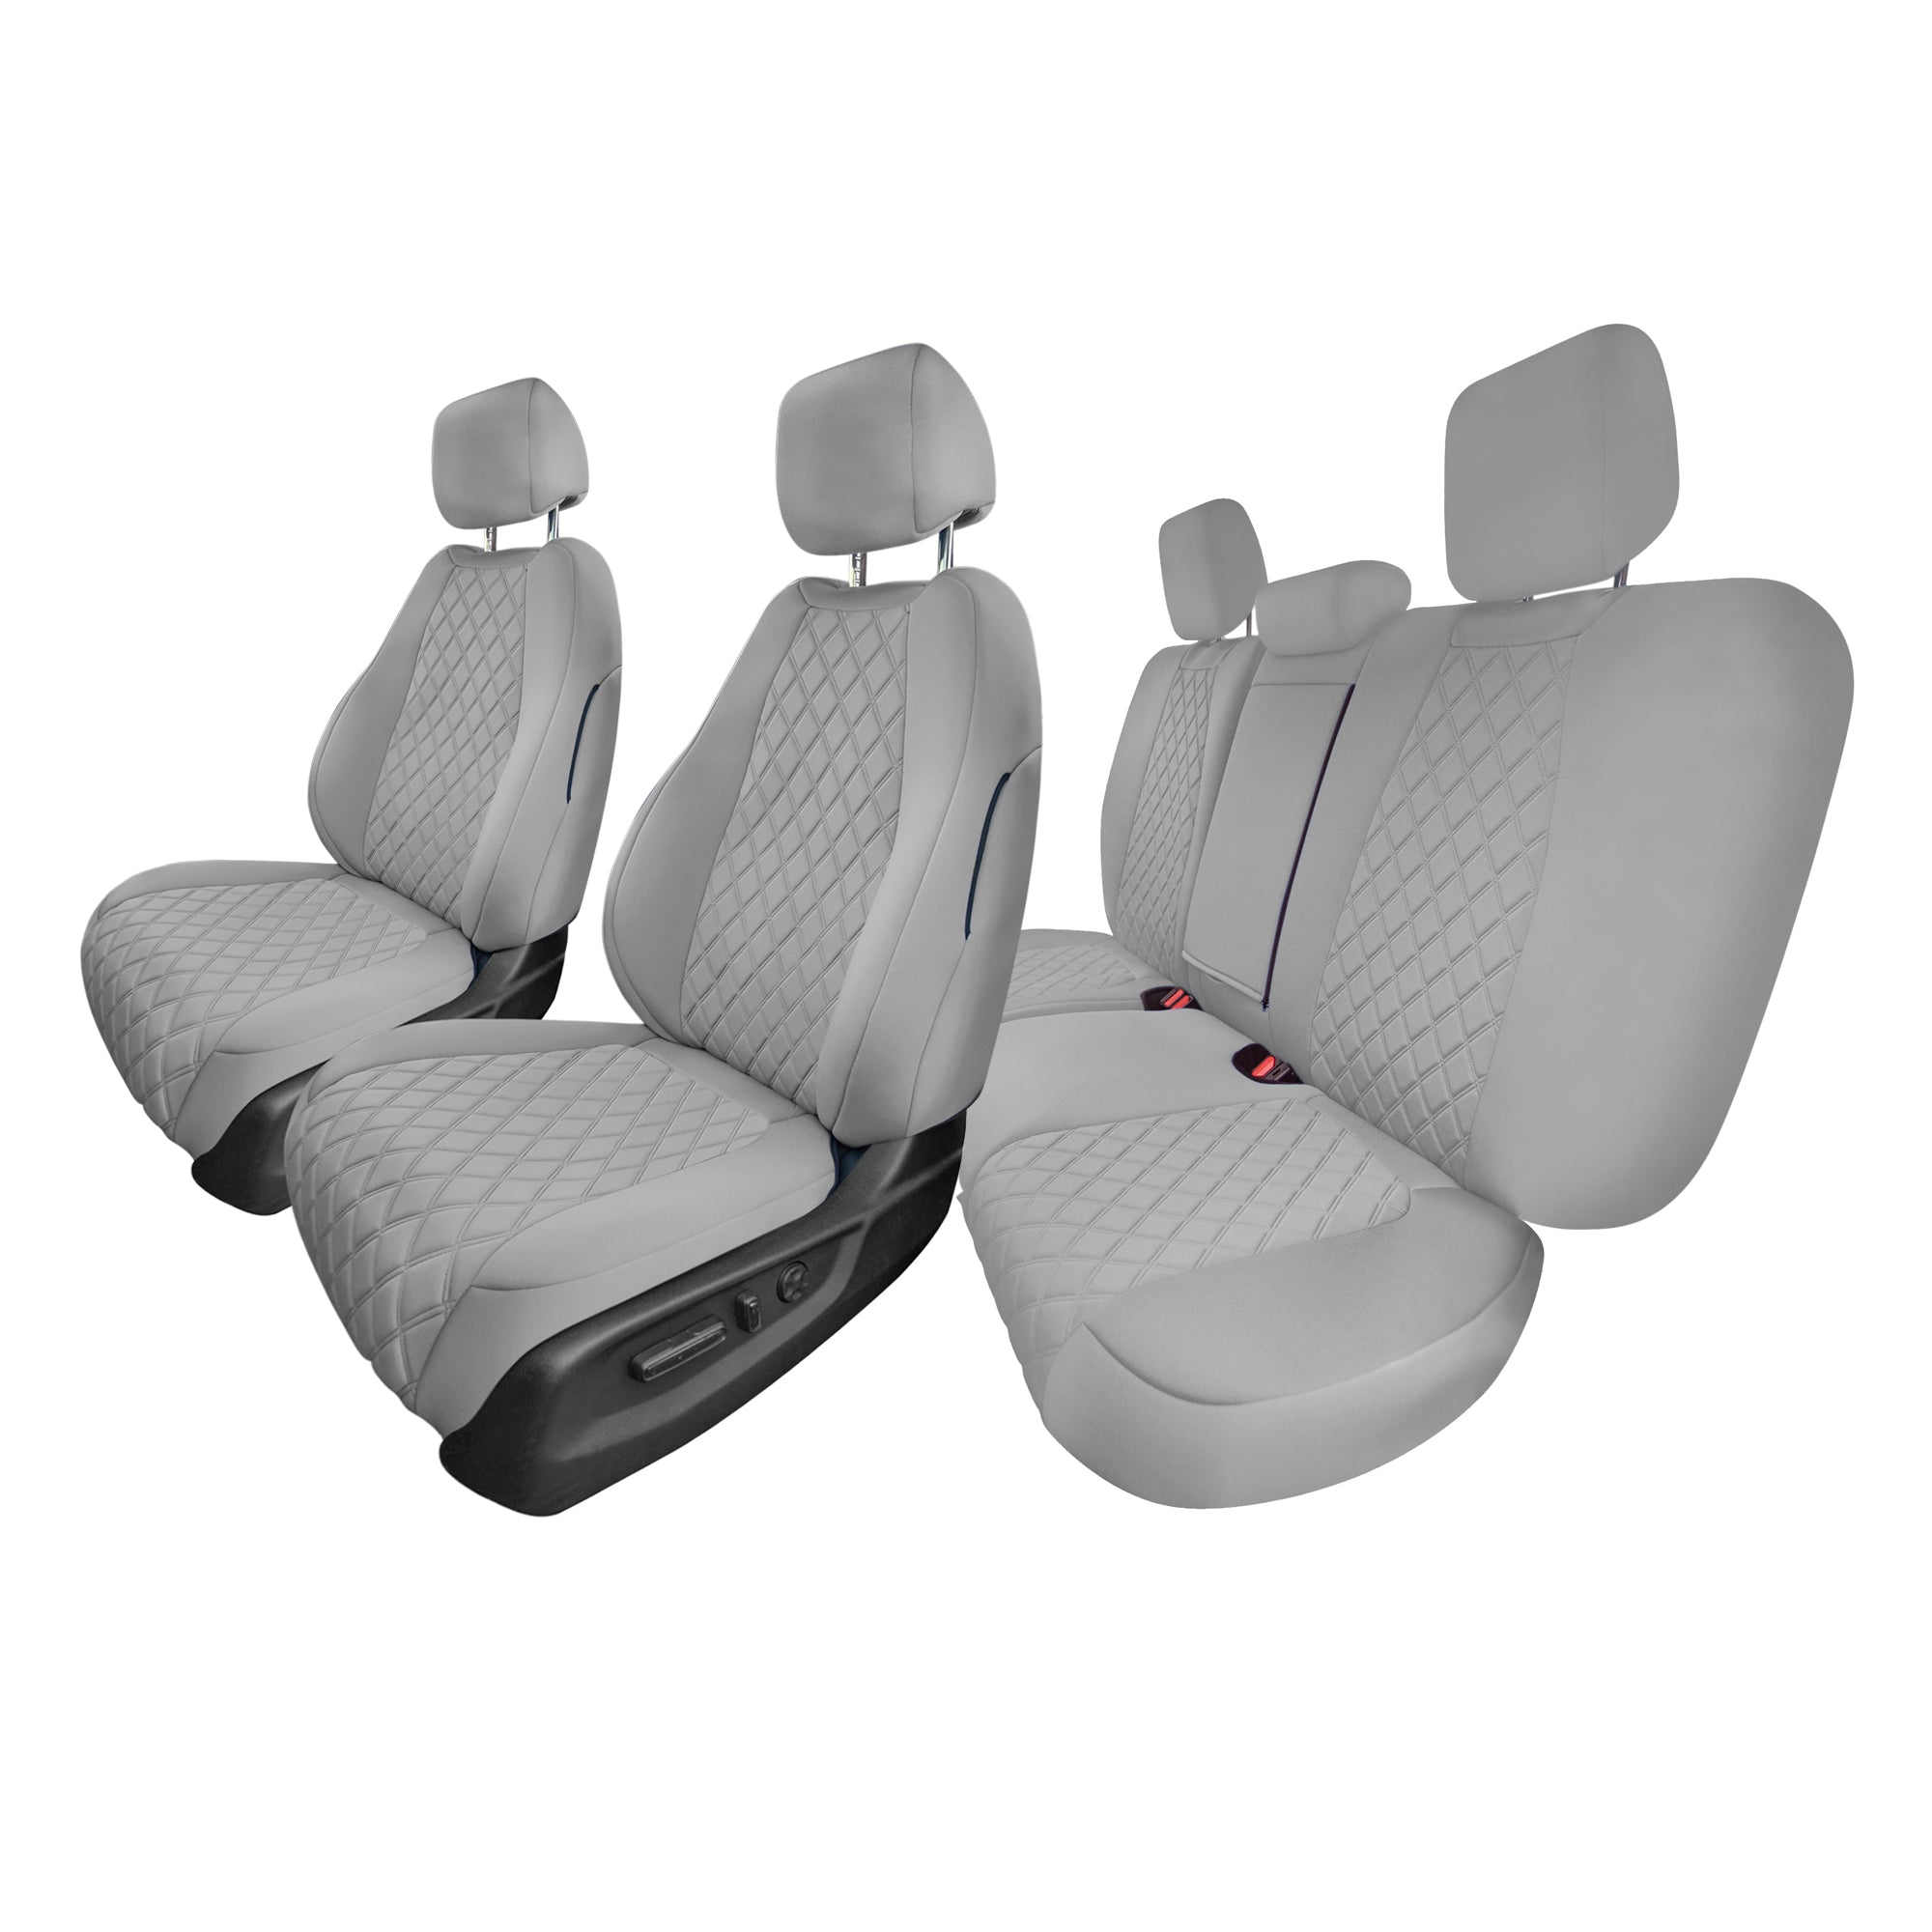 Honda CR-V 2017-2022 - Full Set Seat Covers - Solid Gray Ultraflex Neoprene